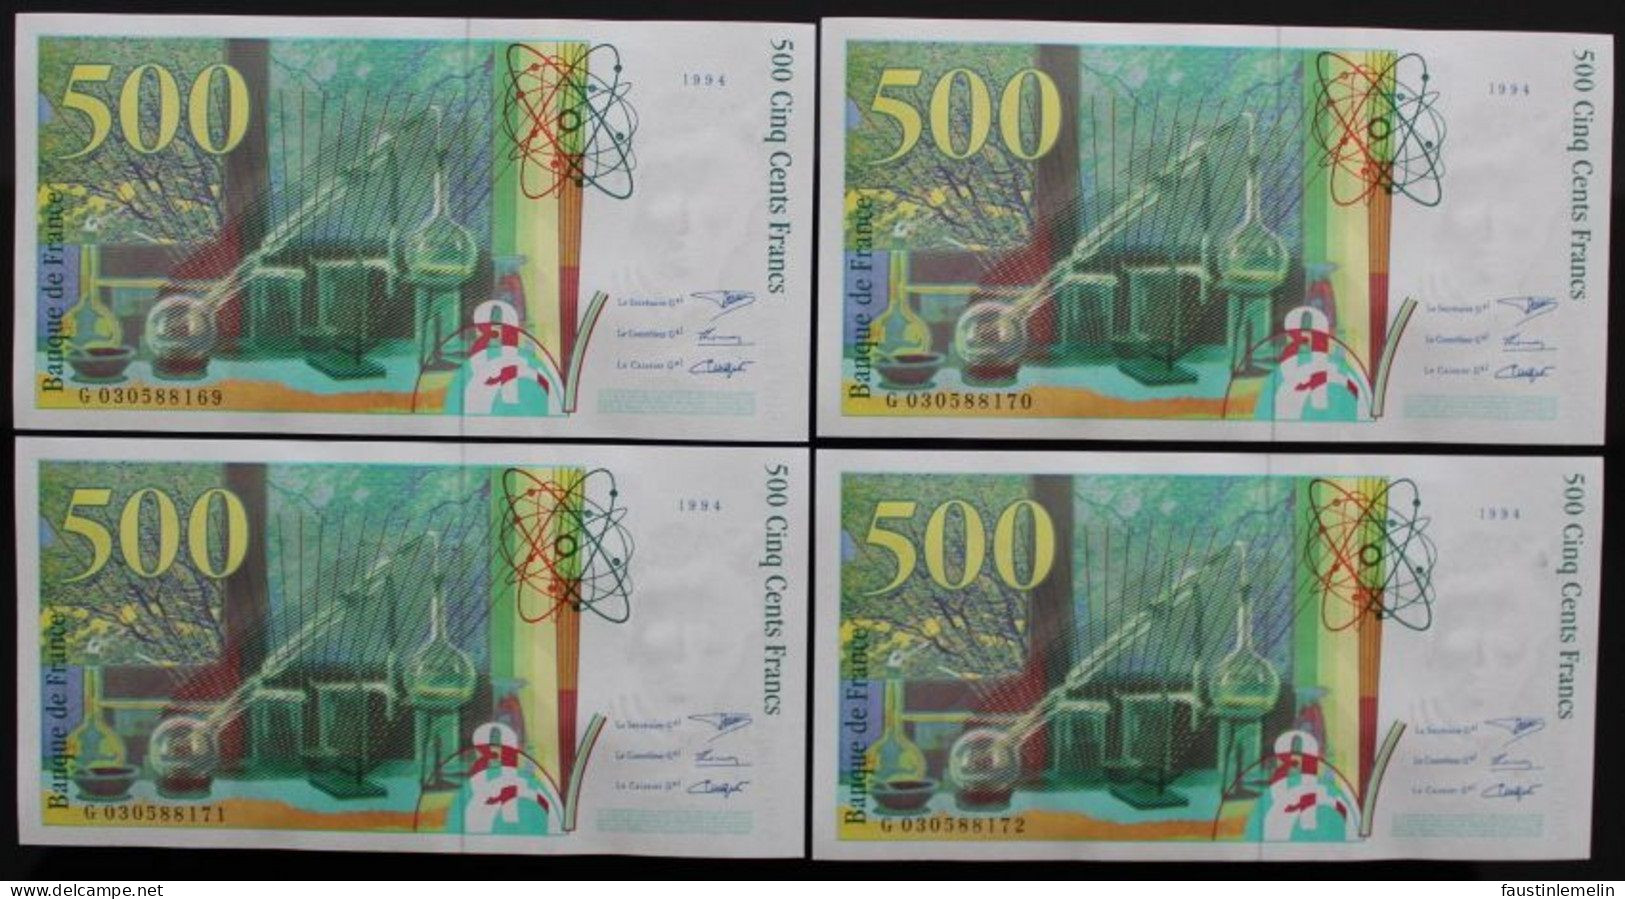 France - 500 Francs - 1994 - PICK 160a.1 / F76.1 - NEUF (12 billets)